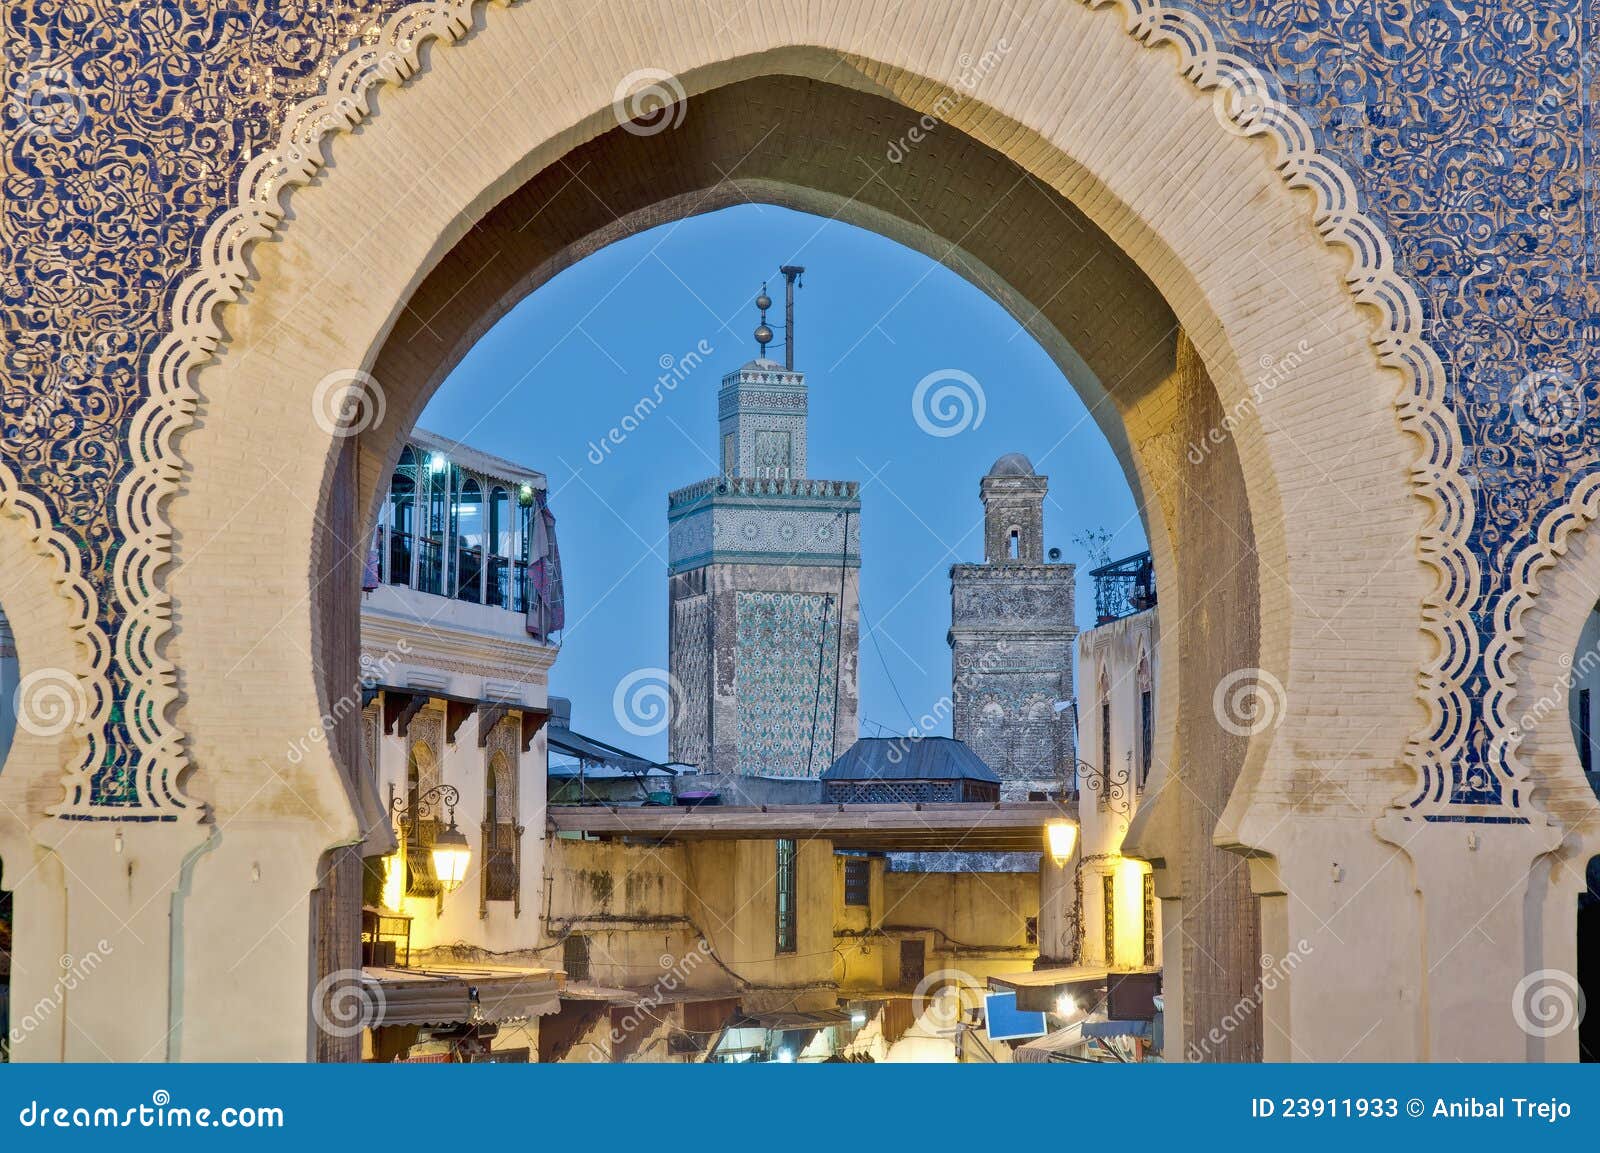 bab bou jeloud gate at fez, morocco